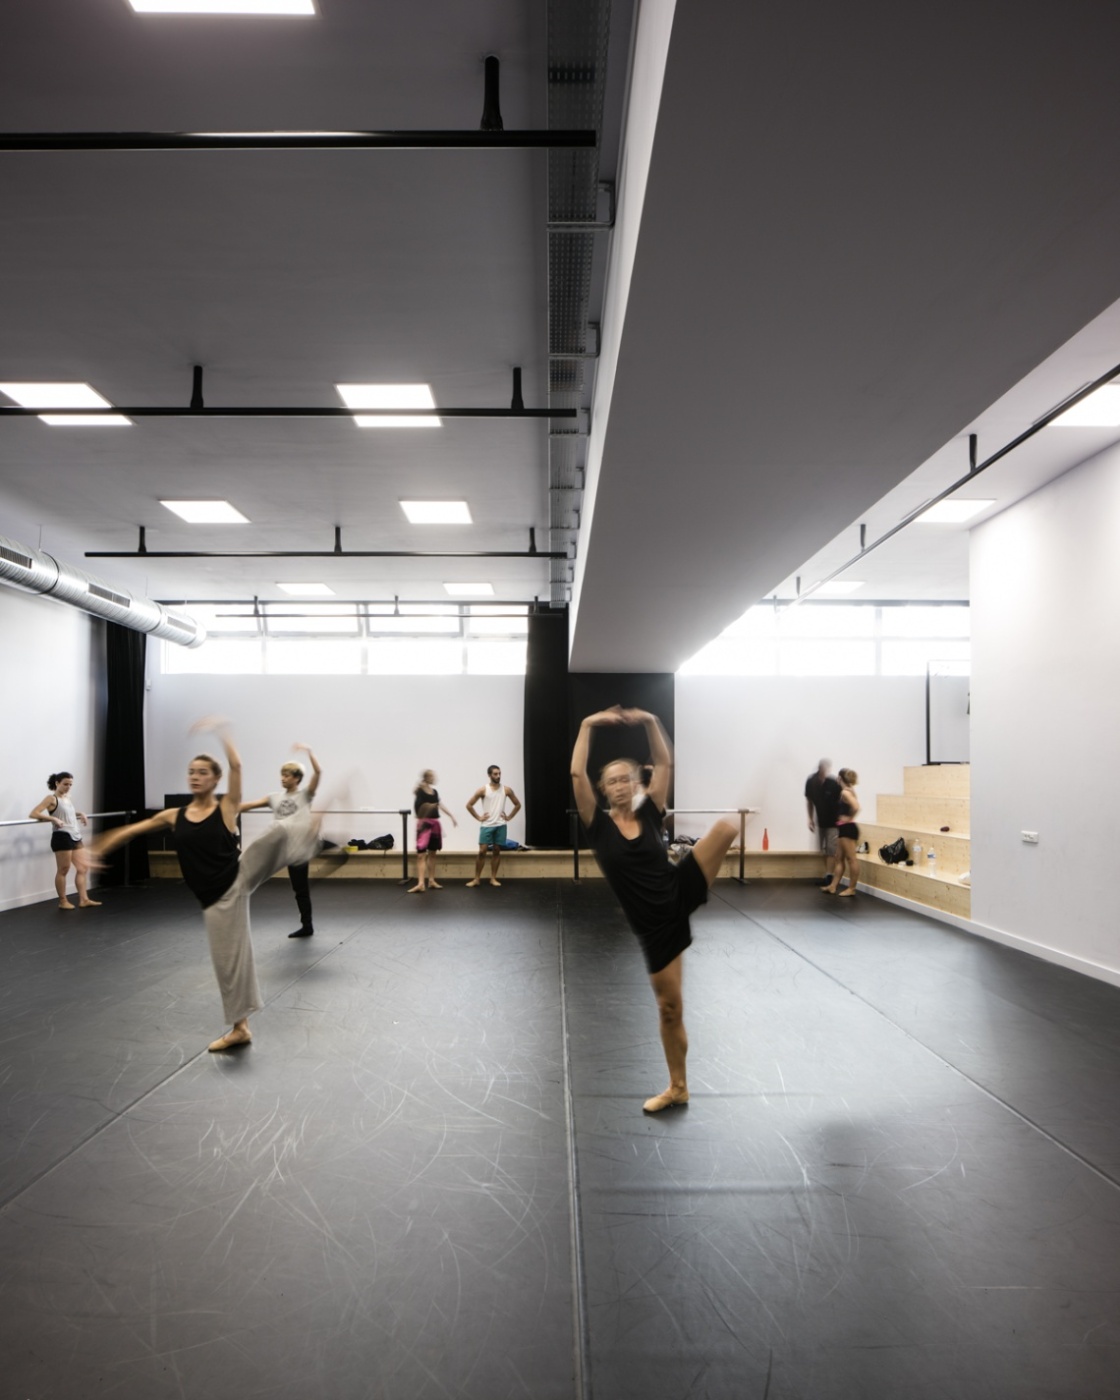 Danse et théâtre, Ballet National de Marseille - Friche la Belle de Mai 